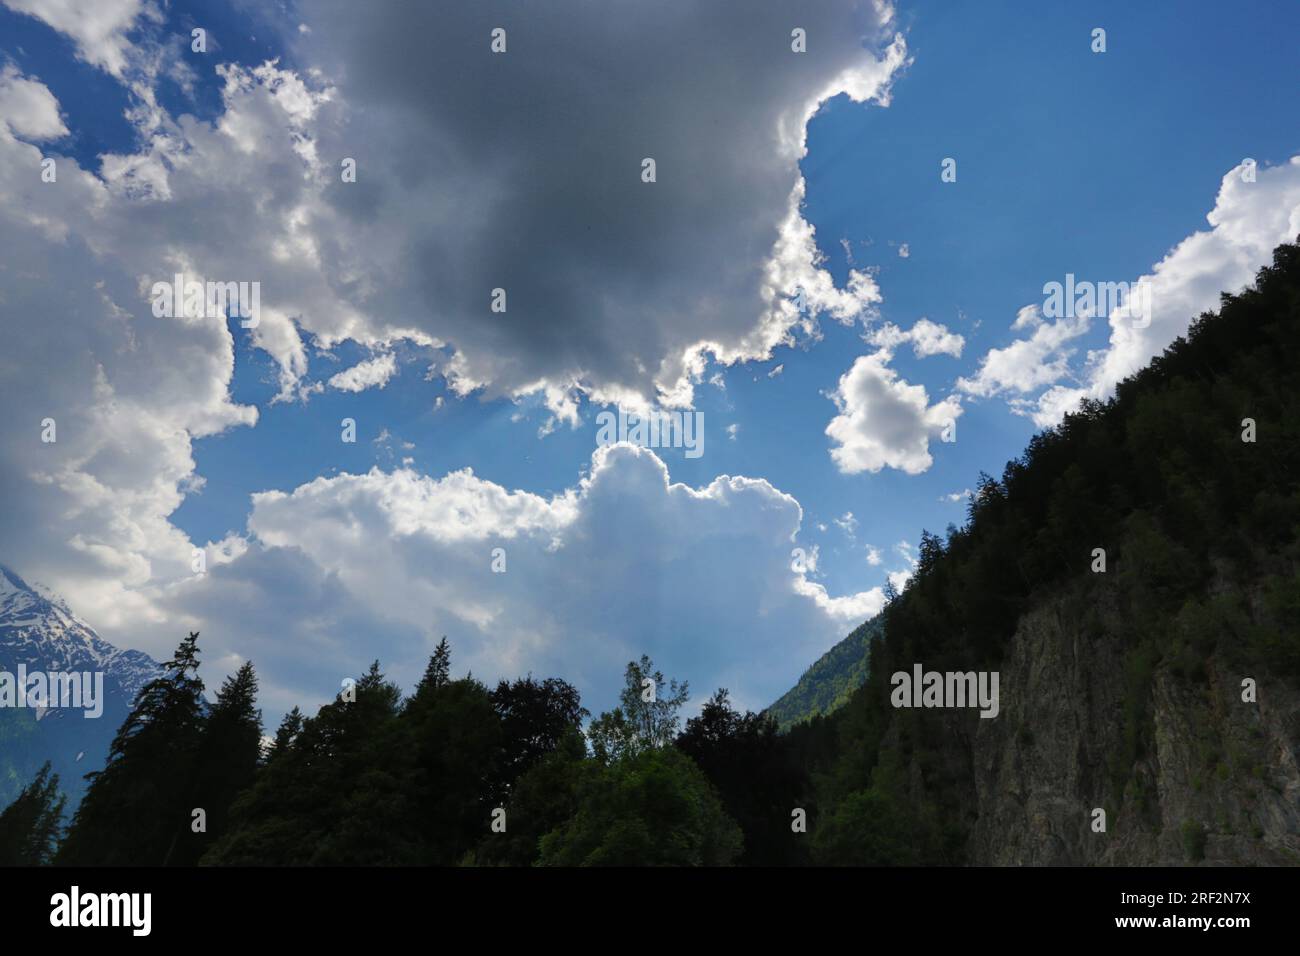 France, Chamonix : nuages en contre jour et ciel bleu Stock Photo